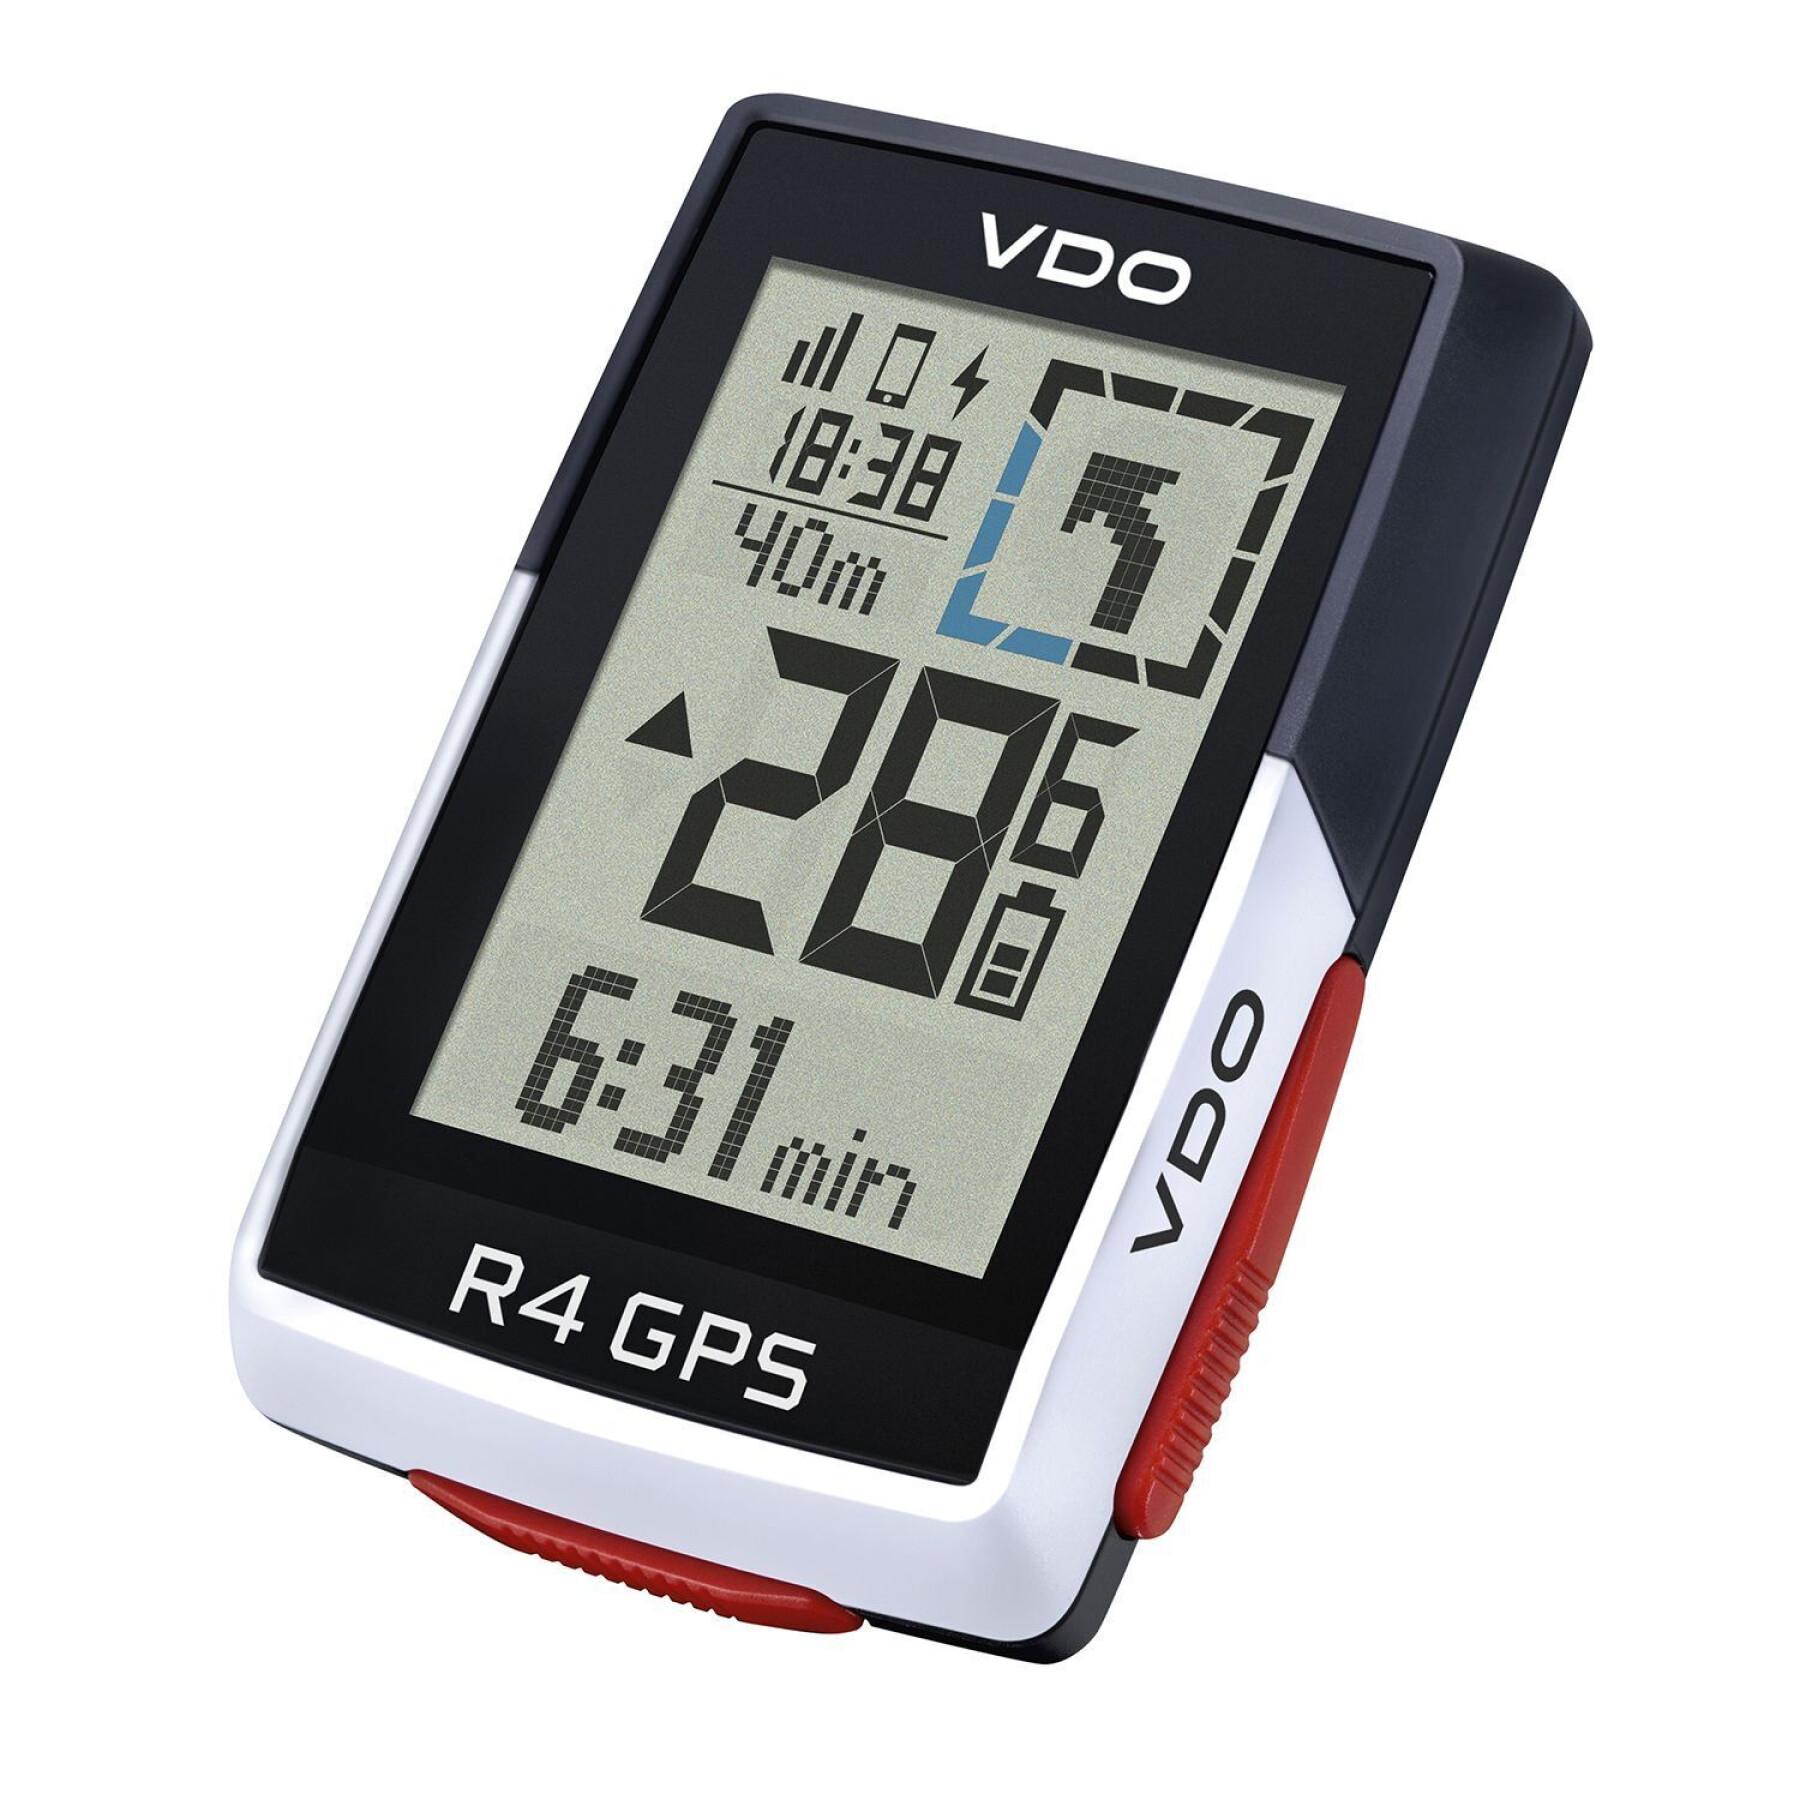 Teller VDO R4 GPS